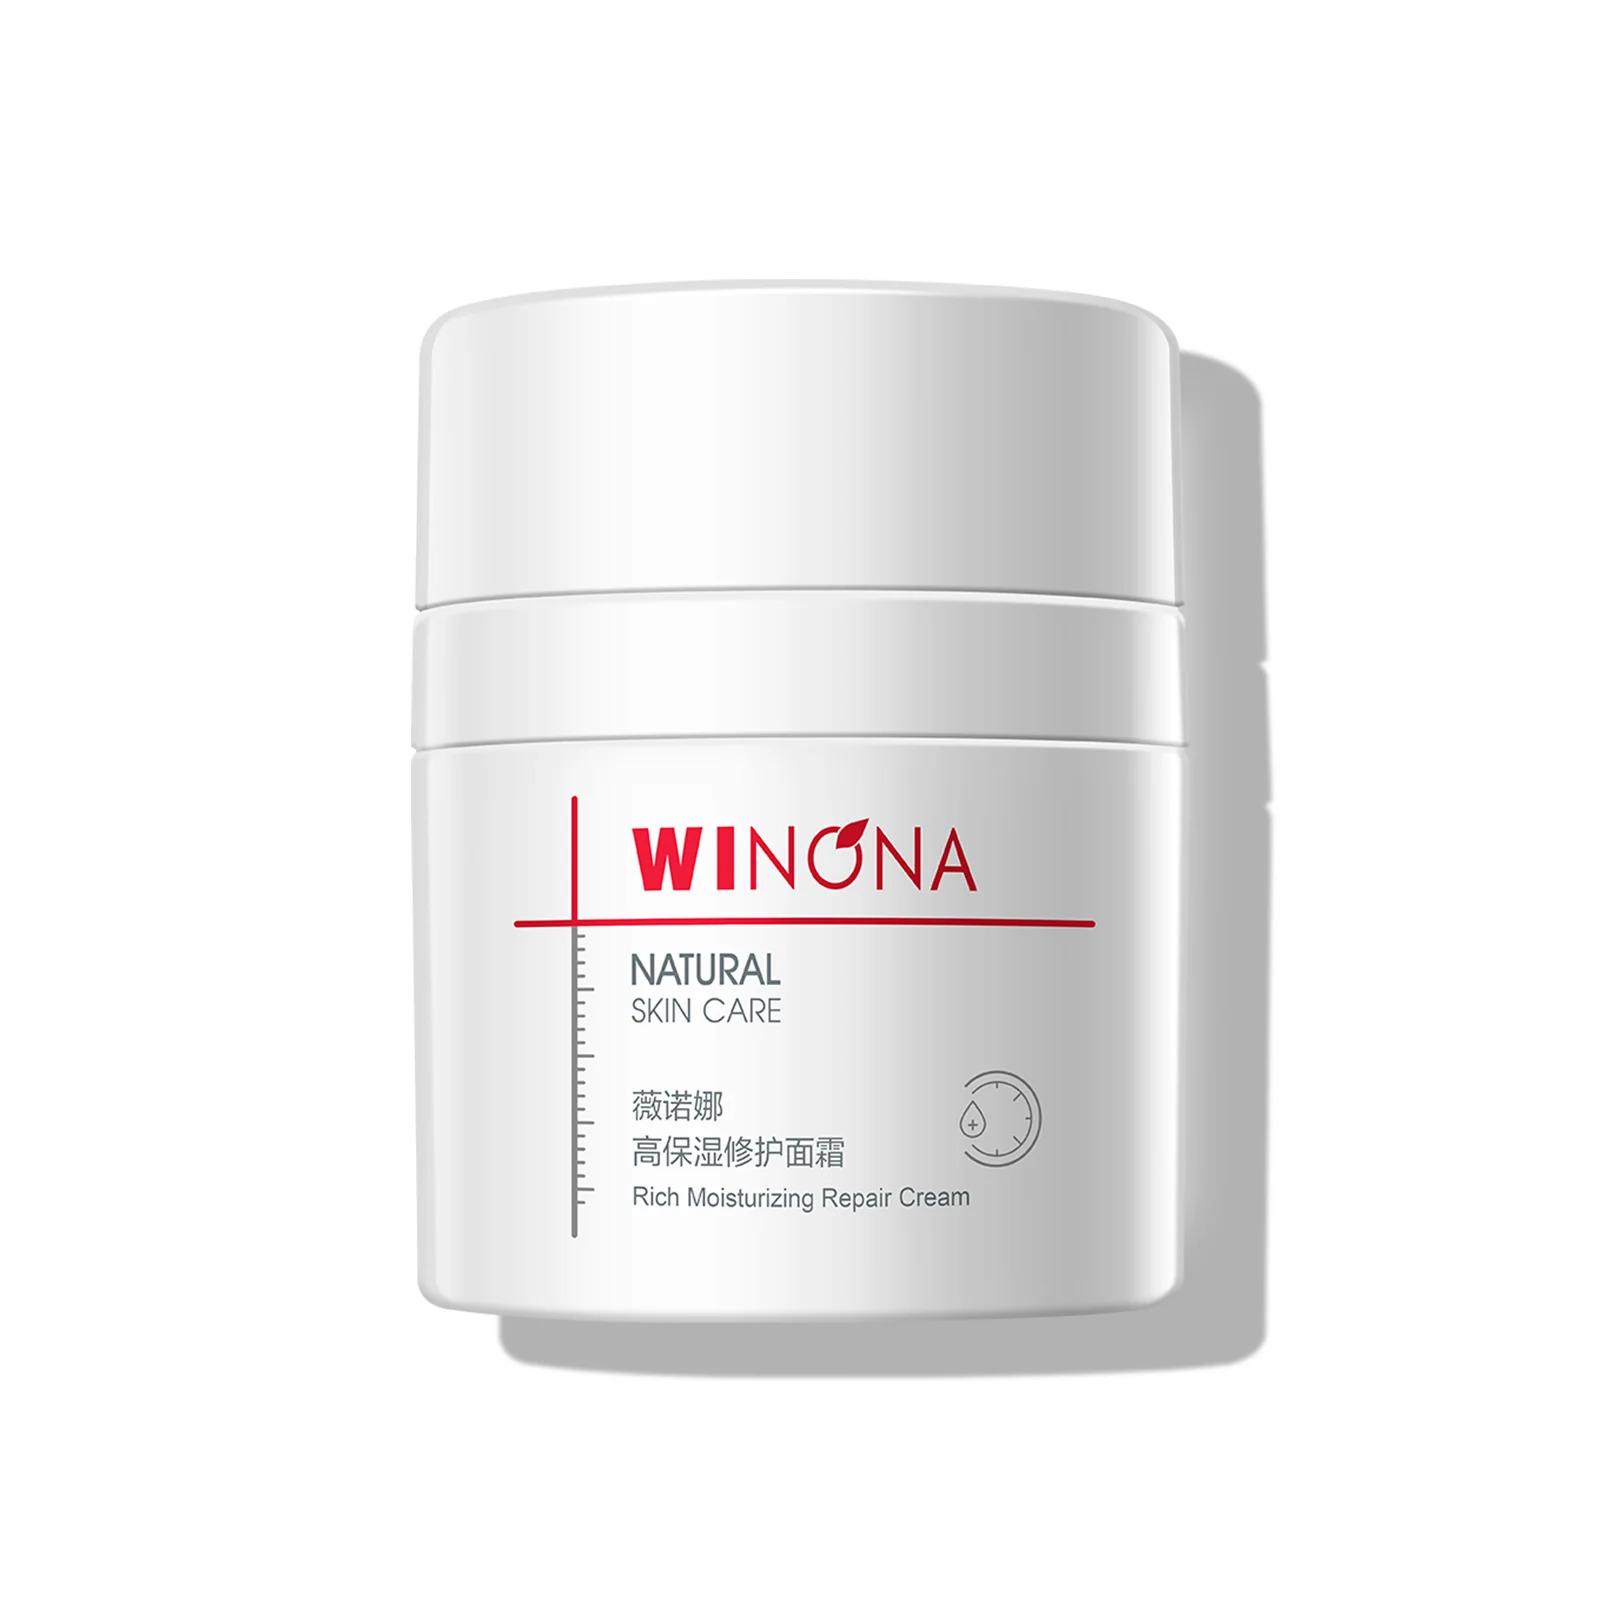 winona-rich-moisturizing-repair-cream